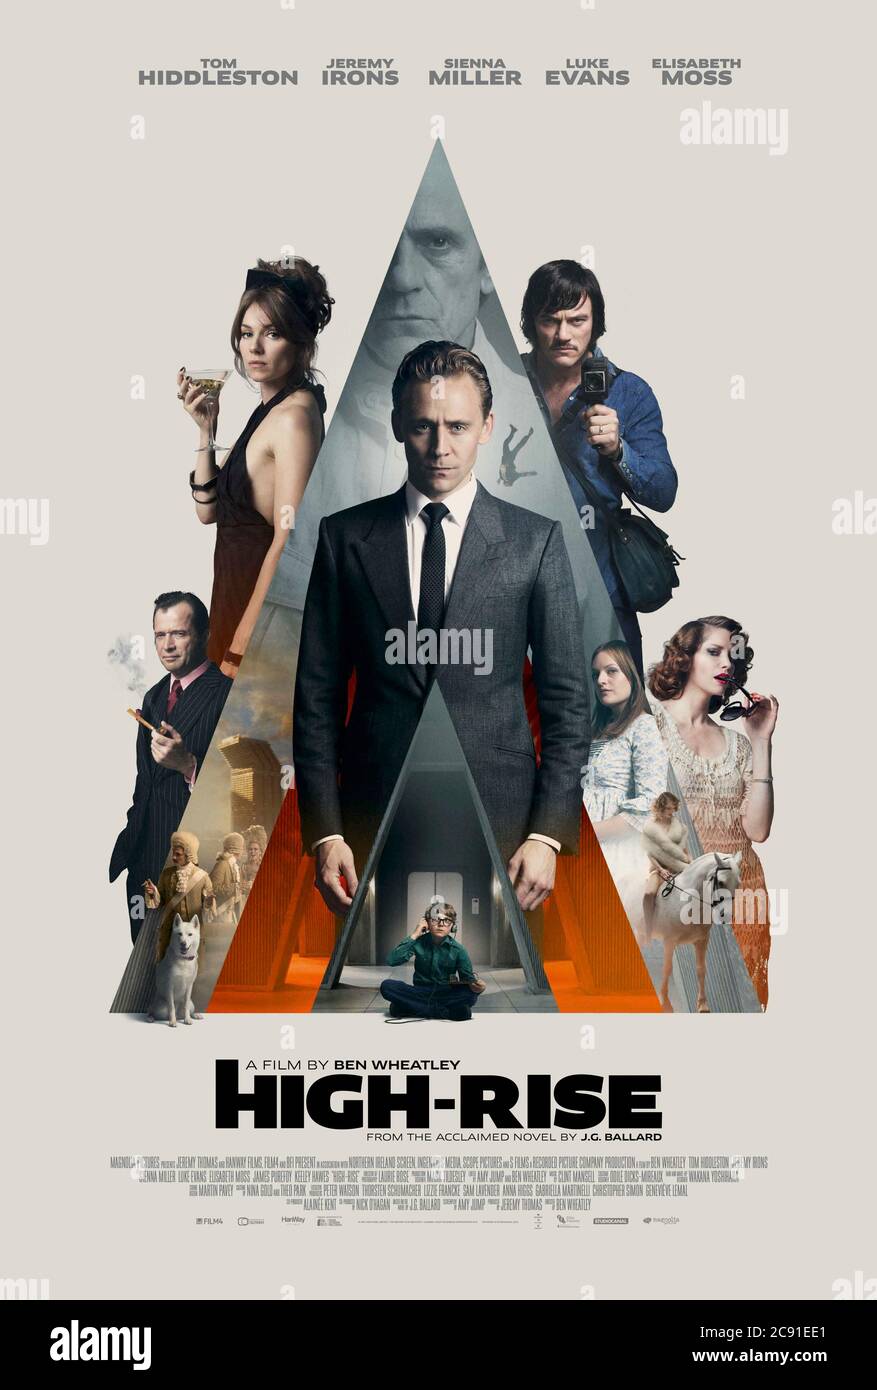 High-Rise (2015) unter der Regie von Ben Wheatley mit Tom Hiddleston, Jeremy Irons, Sienna Miller und Luke Evans. Adaption von J.G. Ballards allegorischer Roman über die Bewohner eines luxuriösen Hochhauses, das in Chaos versinkt. Stockfoto